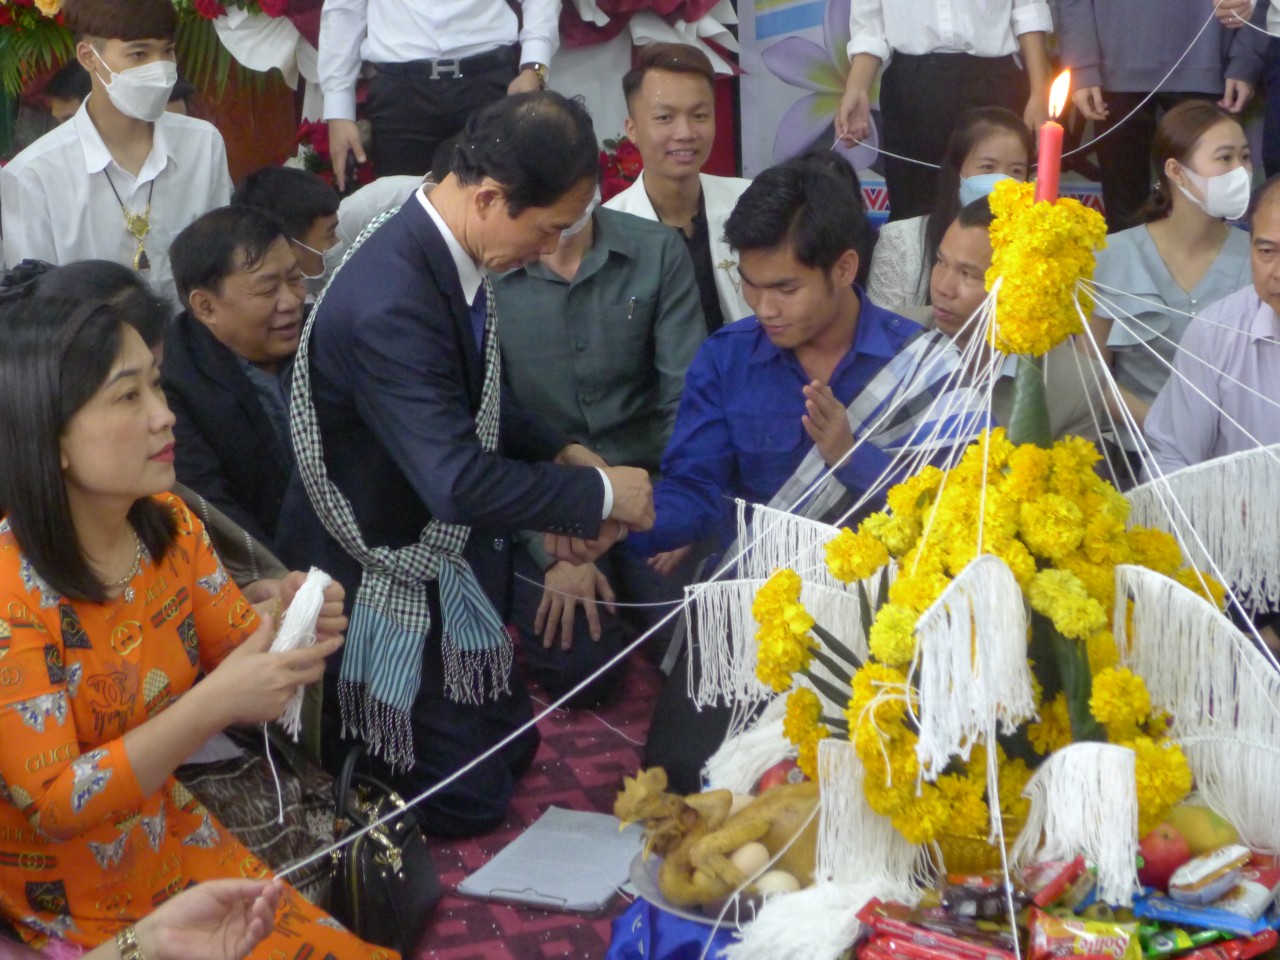 Lưu học sinh Lào, Campuchia tại Thái Nguyên vui Tết cổ truyền Bunpimay và Chol Chnam Thmay